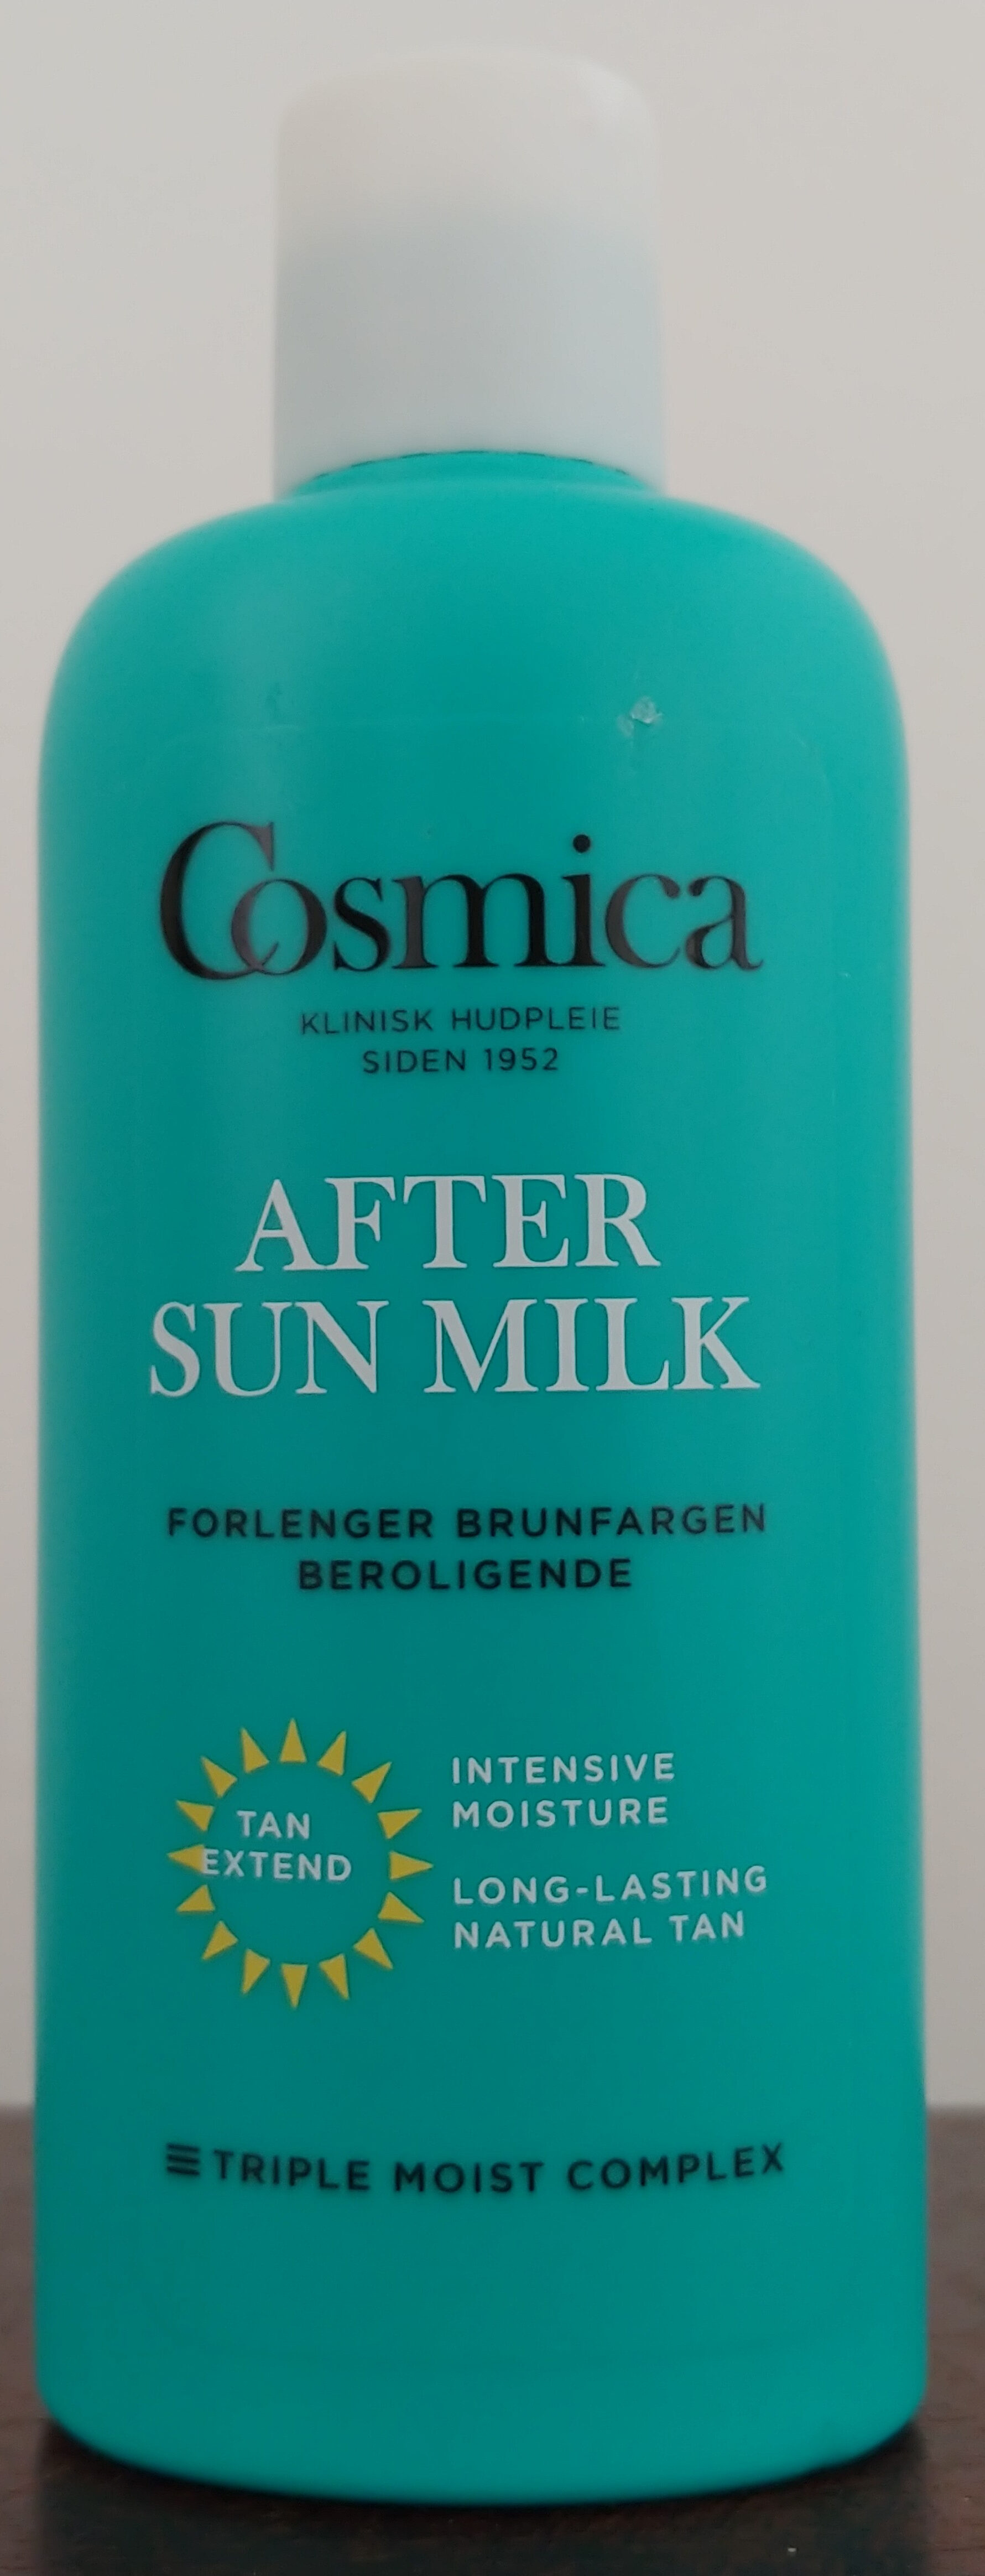 After Sun Milk - Produit - en